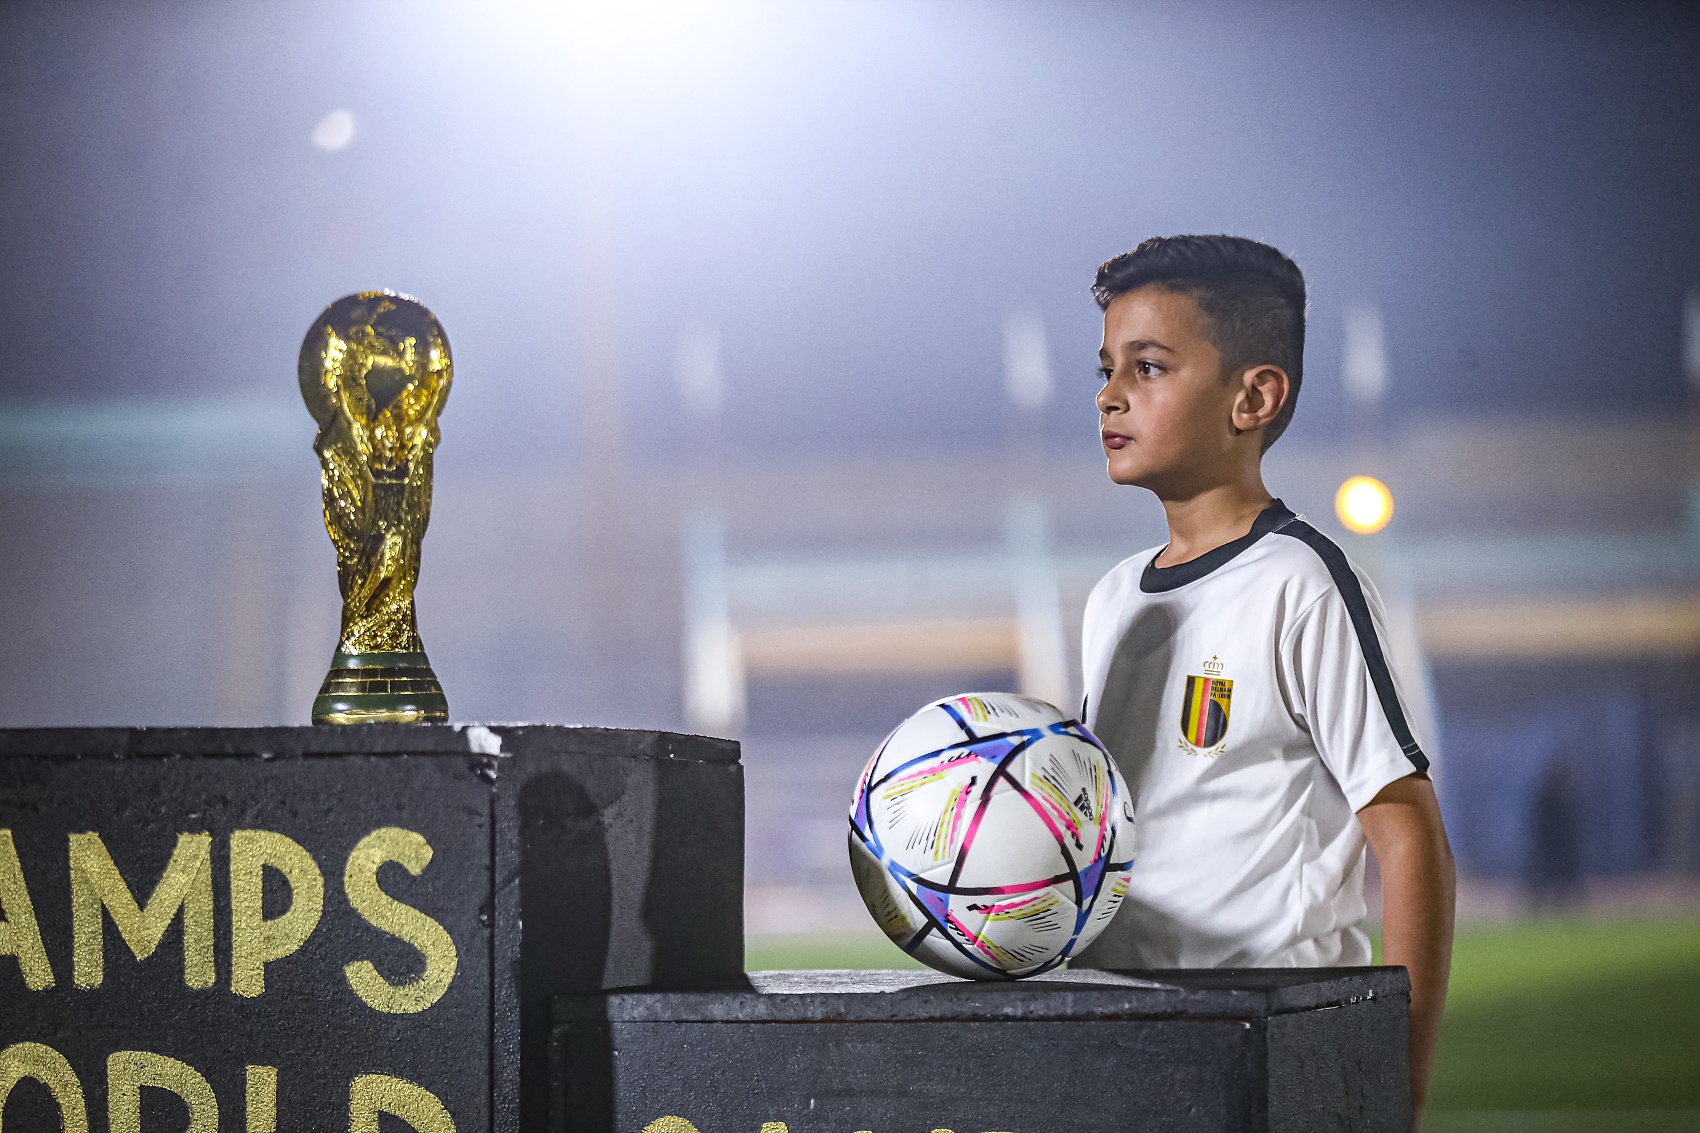 ⚽今天是世界足球日⚽ 世界各地的孩子都在追逐同一个梦想